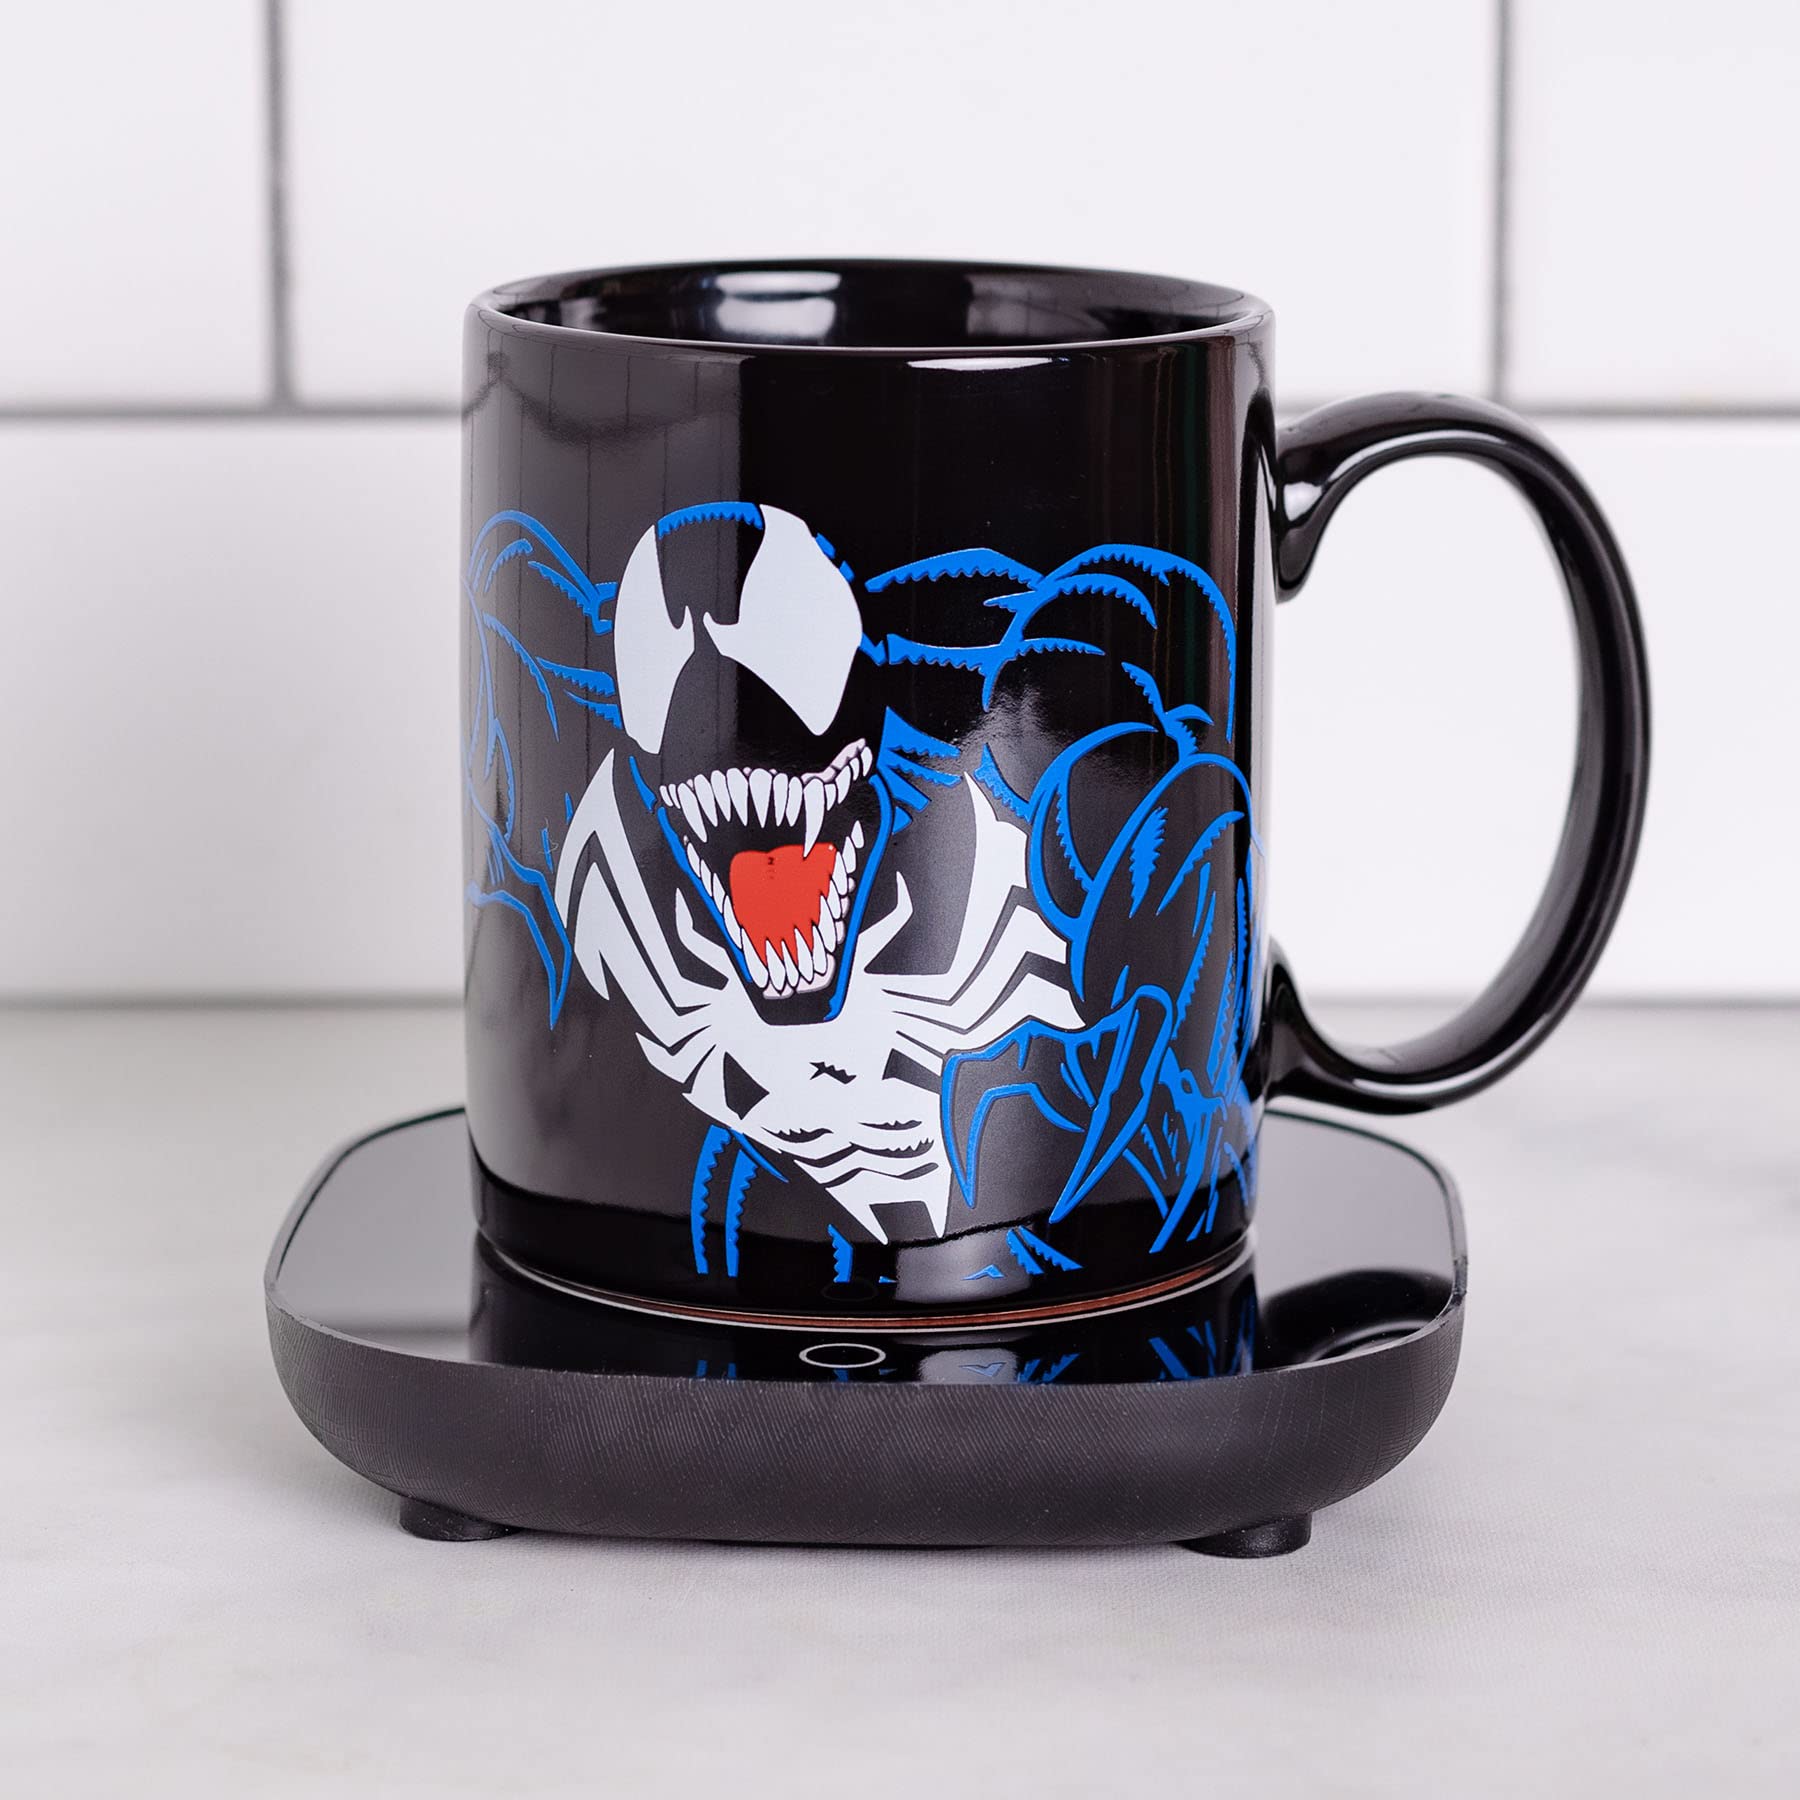 Uncanny Brands Marvel Venom Mug Warmer with Mug – Keeps Your Favorite Beverage Warm - Auto Shut On/Off